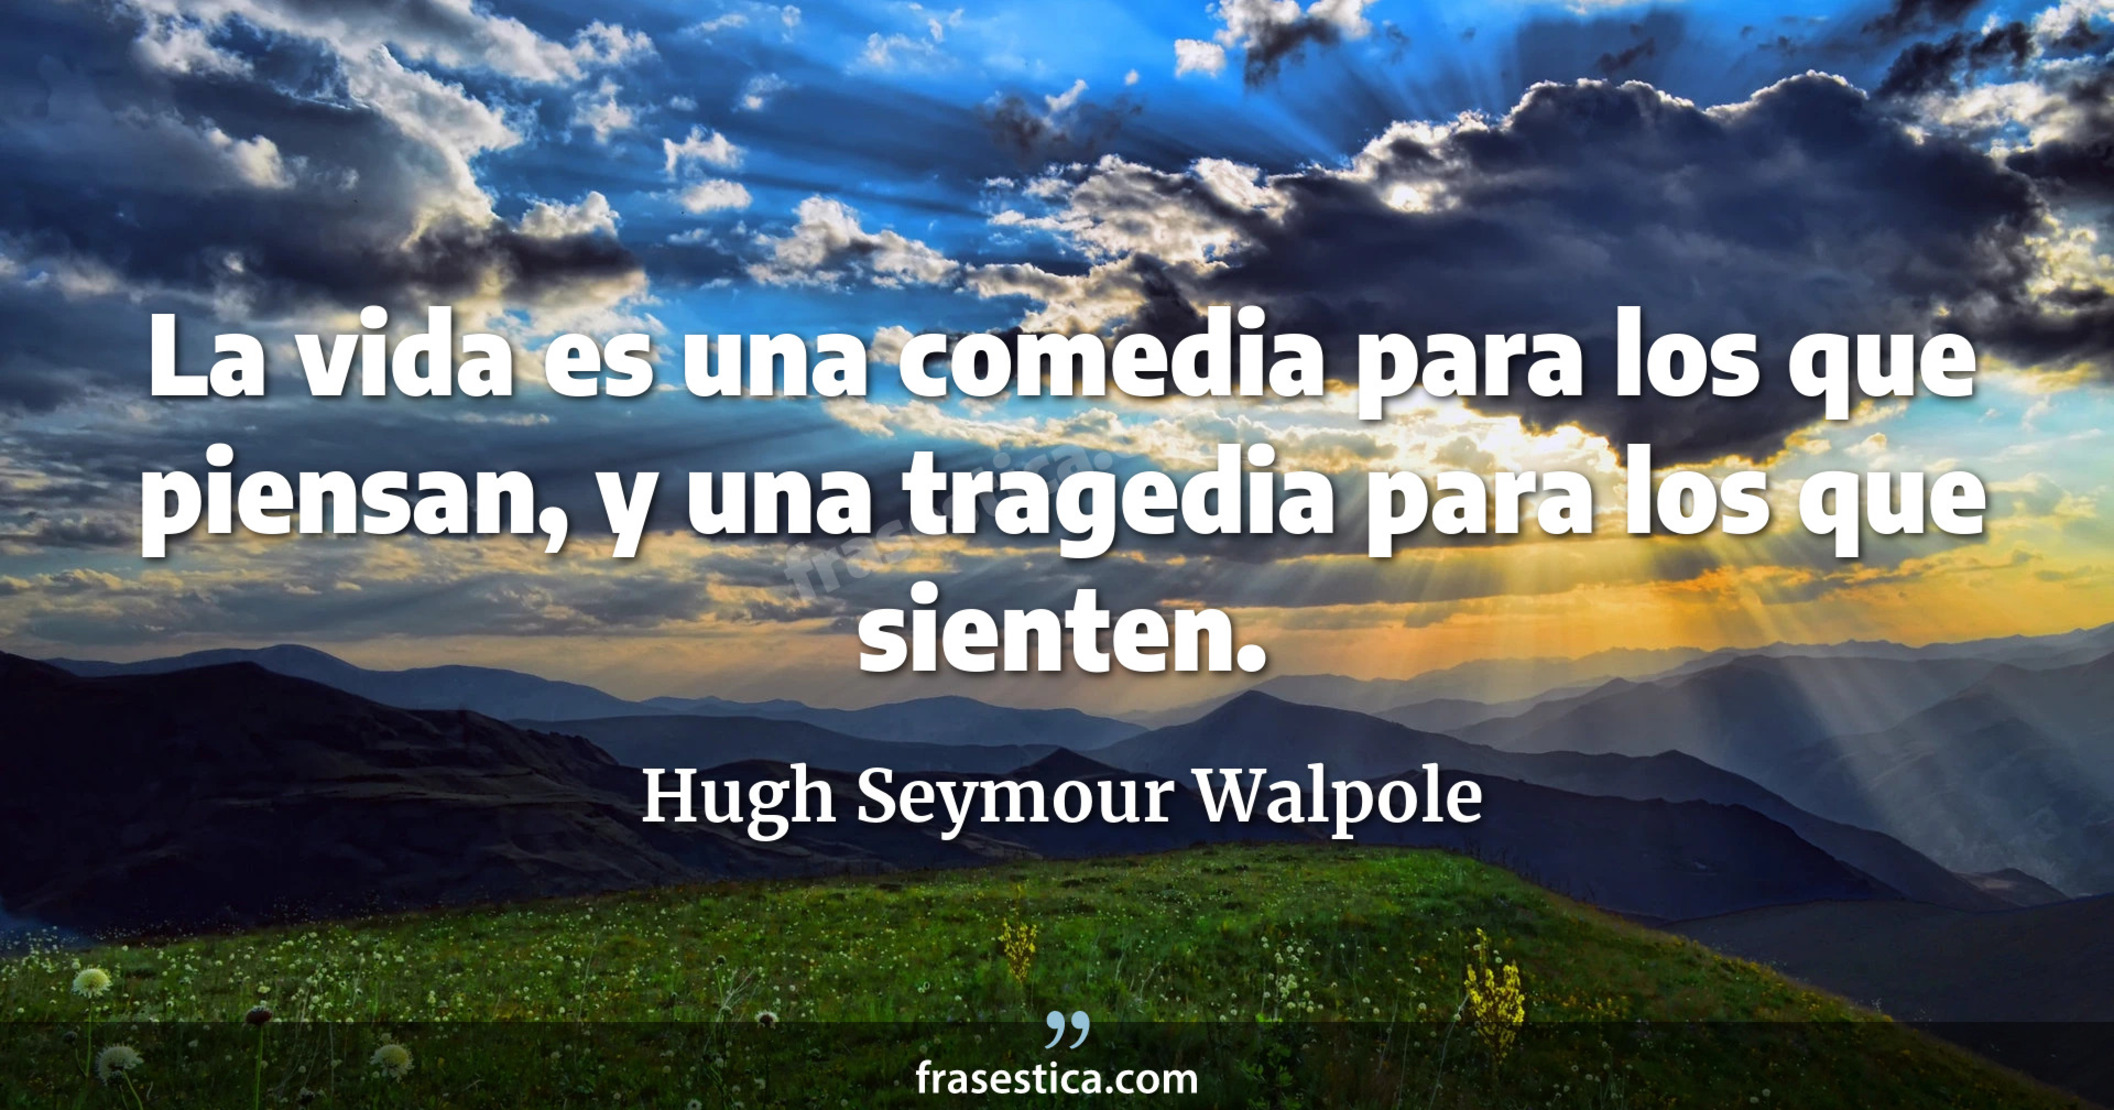 La vida es una comedia para los que piensan, y una tragedia para los que sienten. - Hugh Seymour Walpole